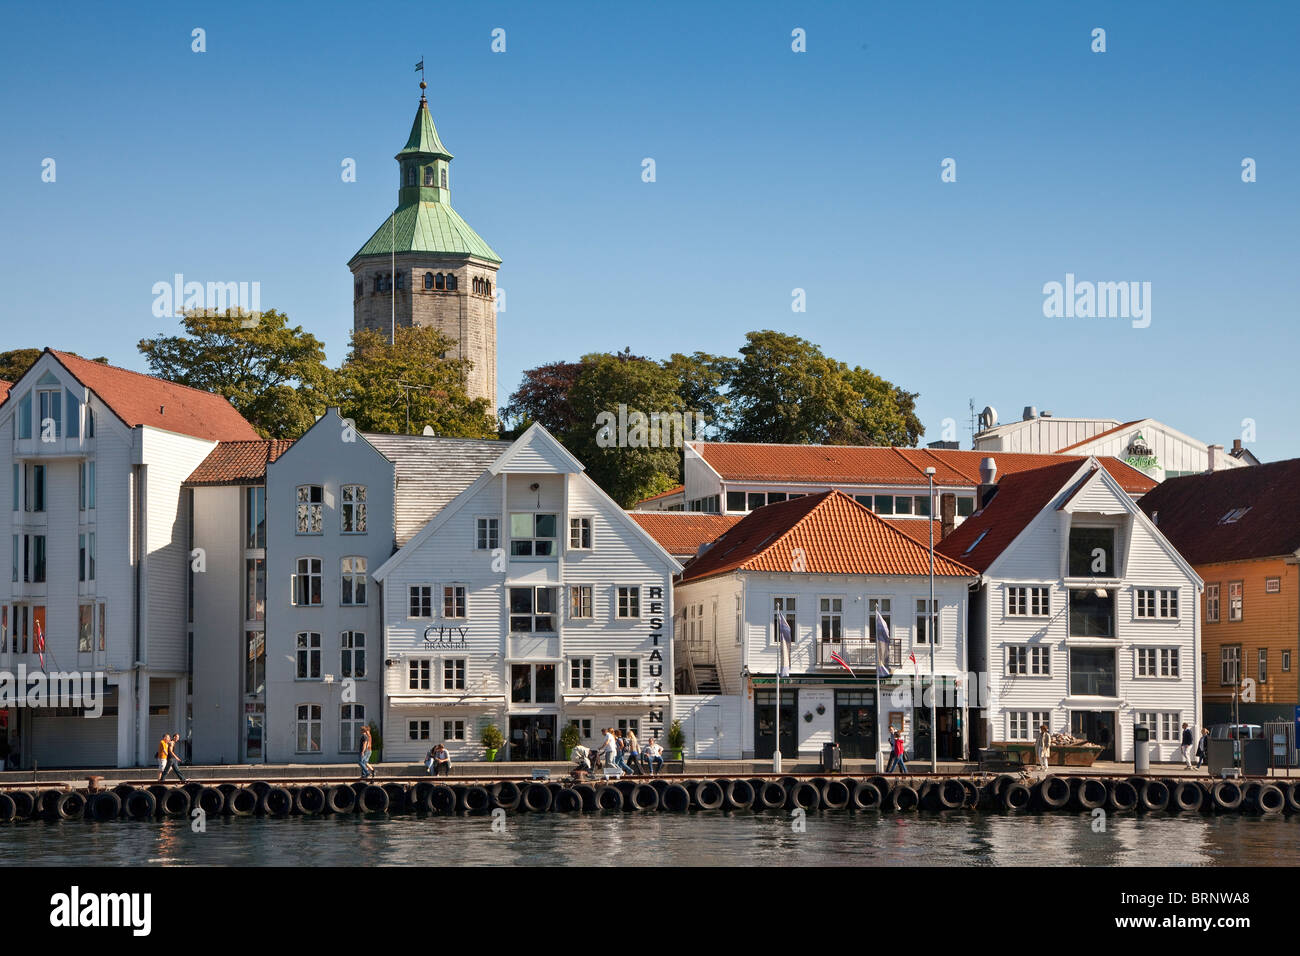 Gamle Stavanger, part of the older town of Stavanger, white boarded houses, harbour scene Stock Photo